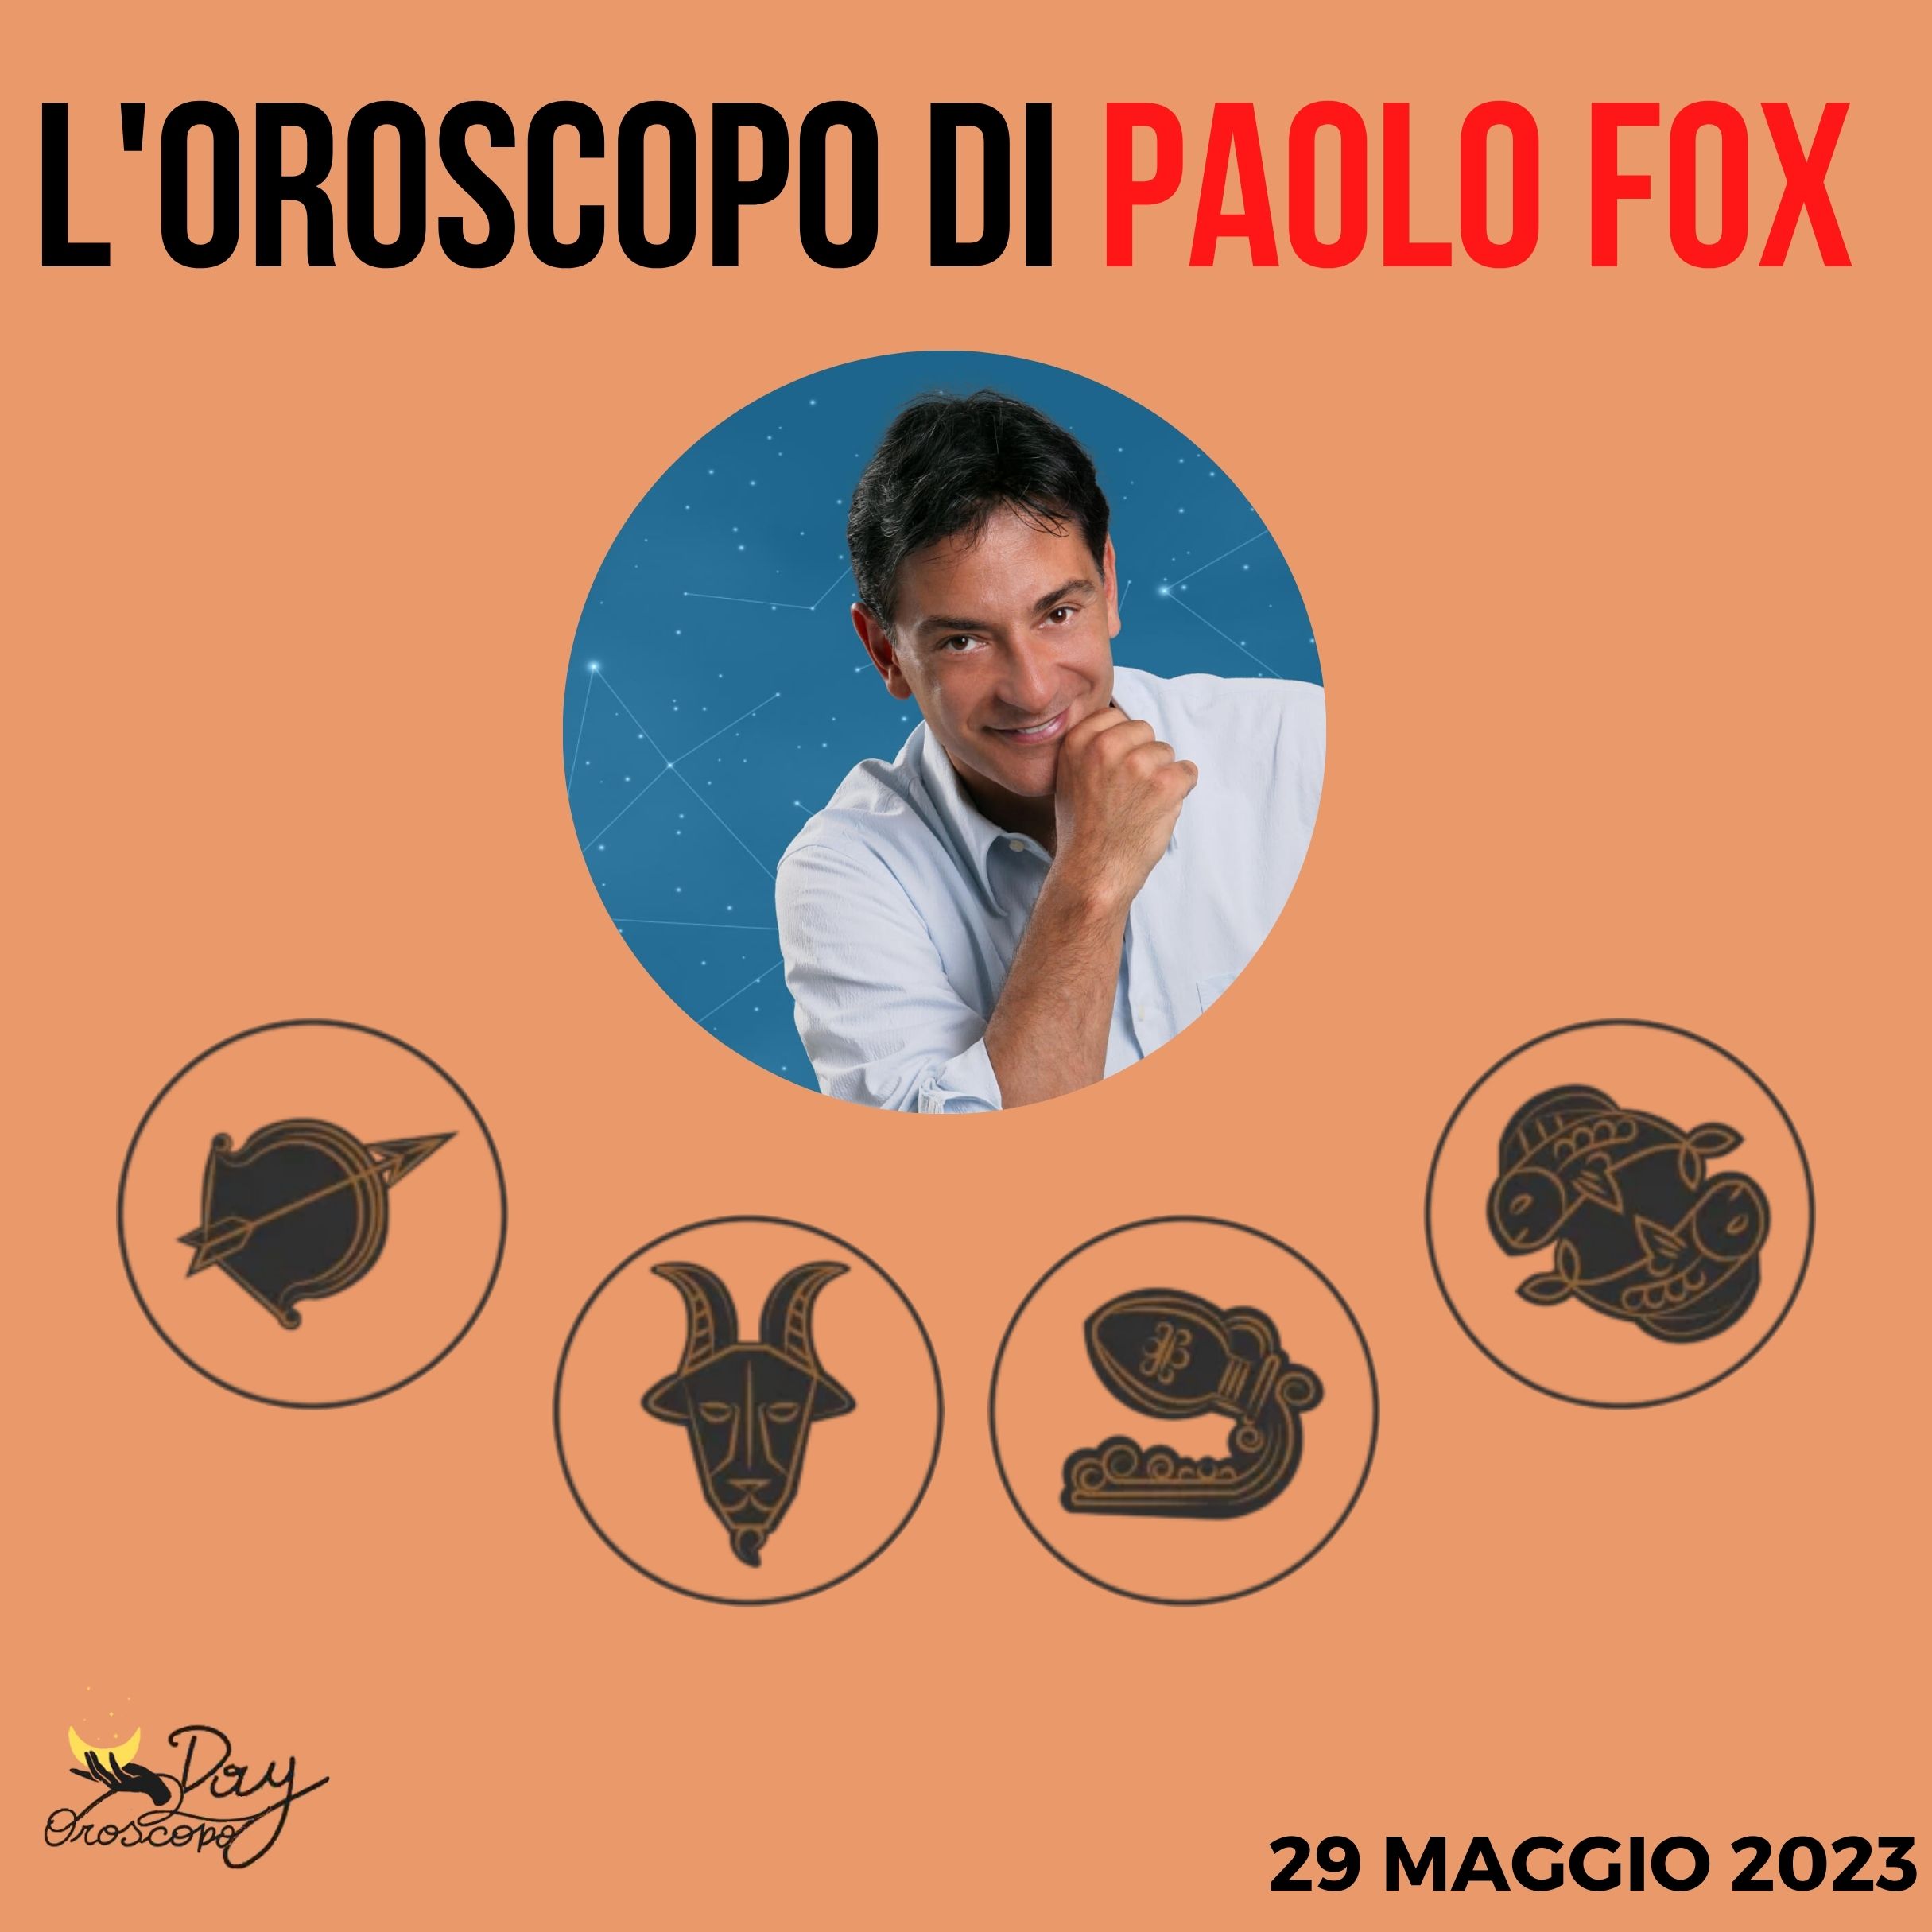 Oroscopo oggi domani Fox 29 maggio Sagittario Capricorno Acquario Pesci